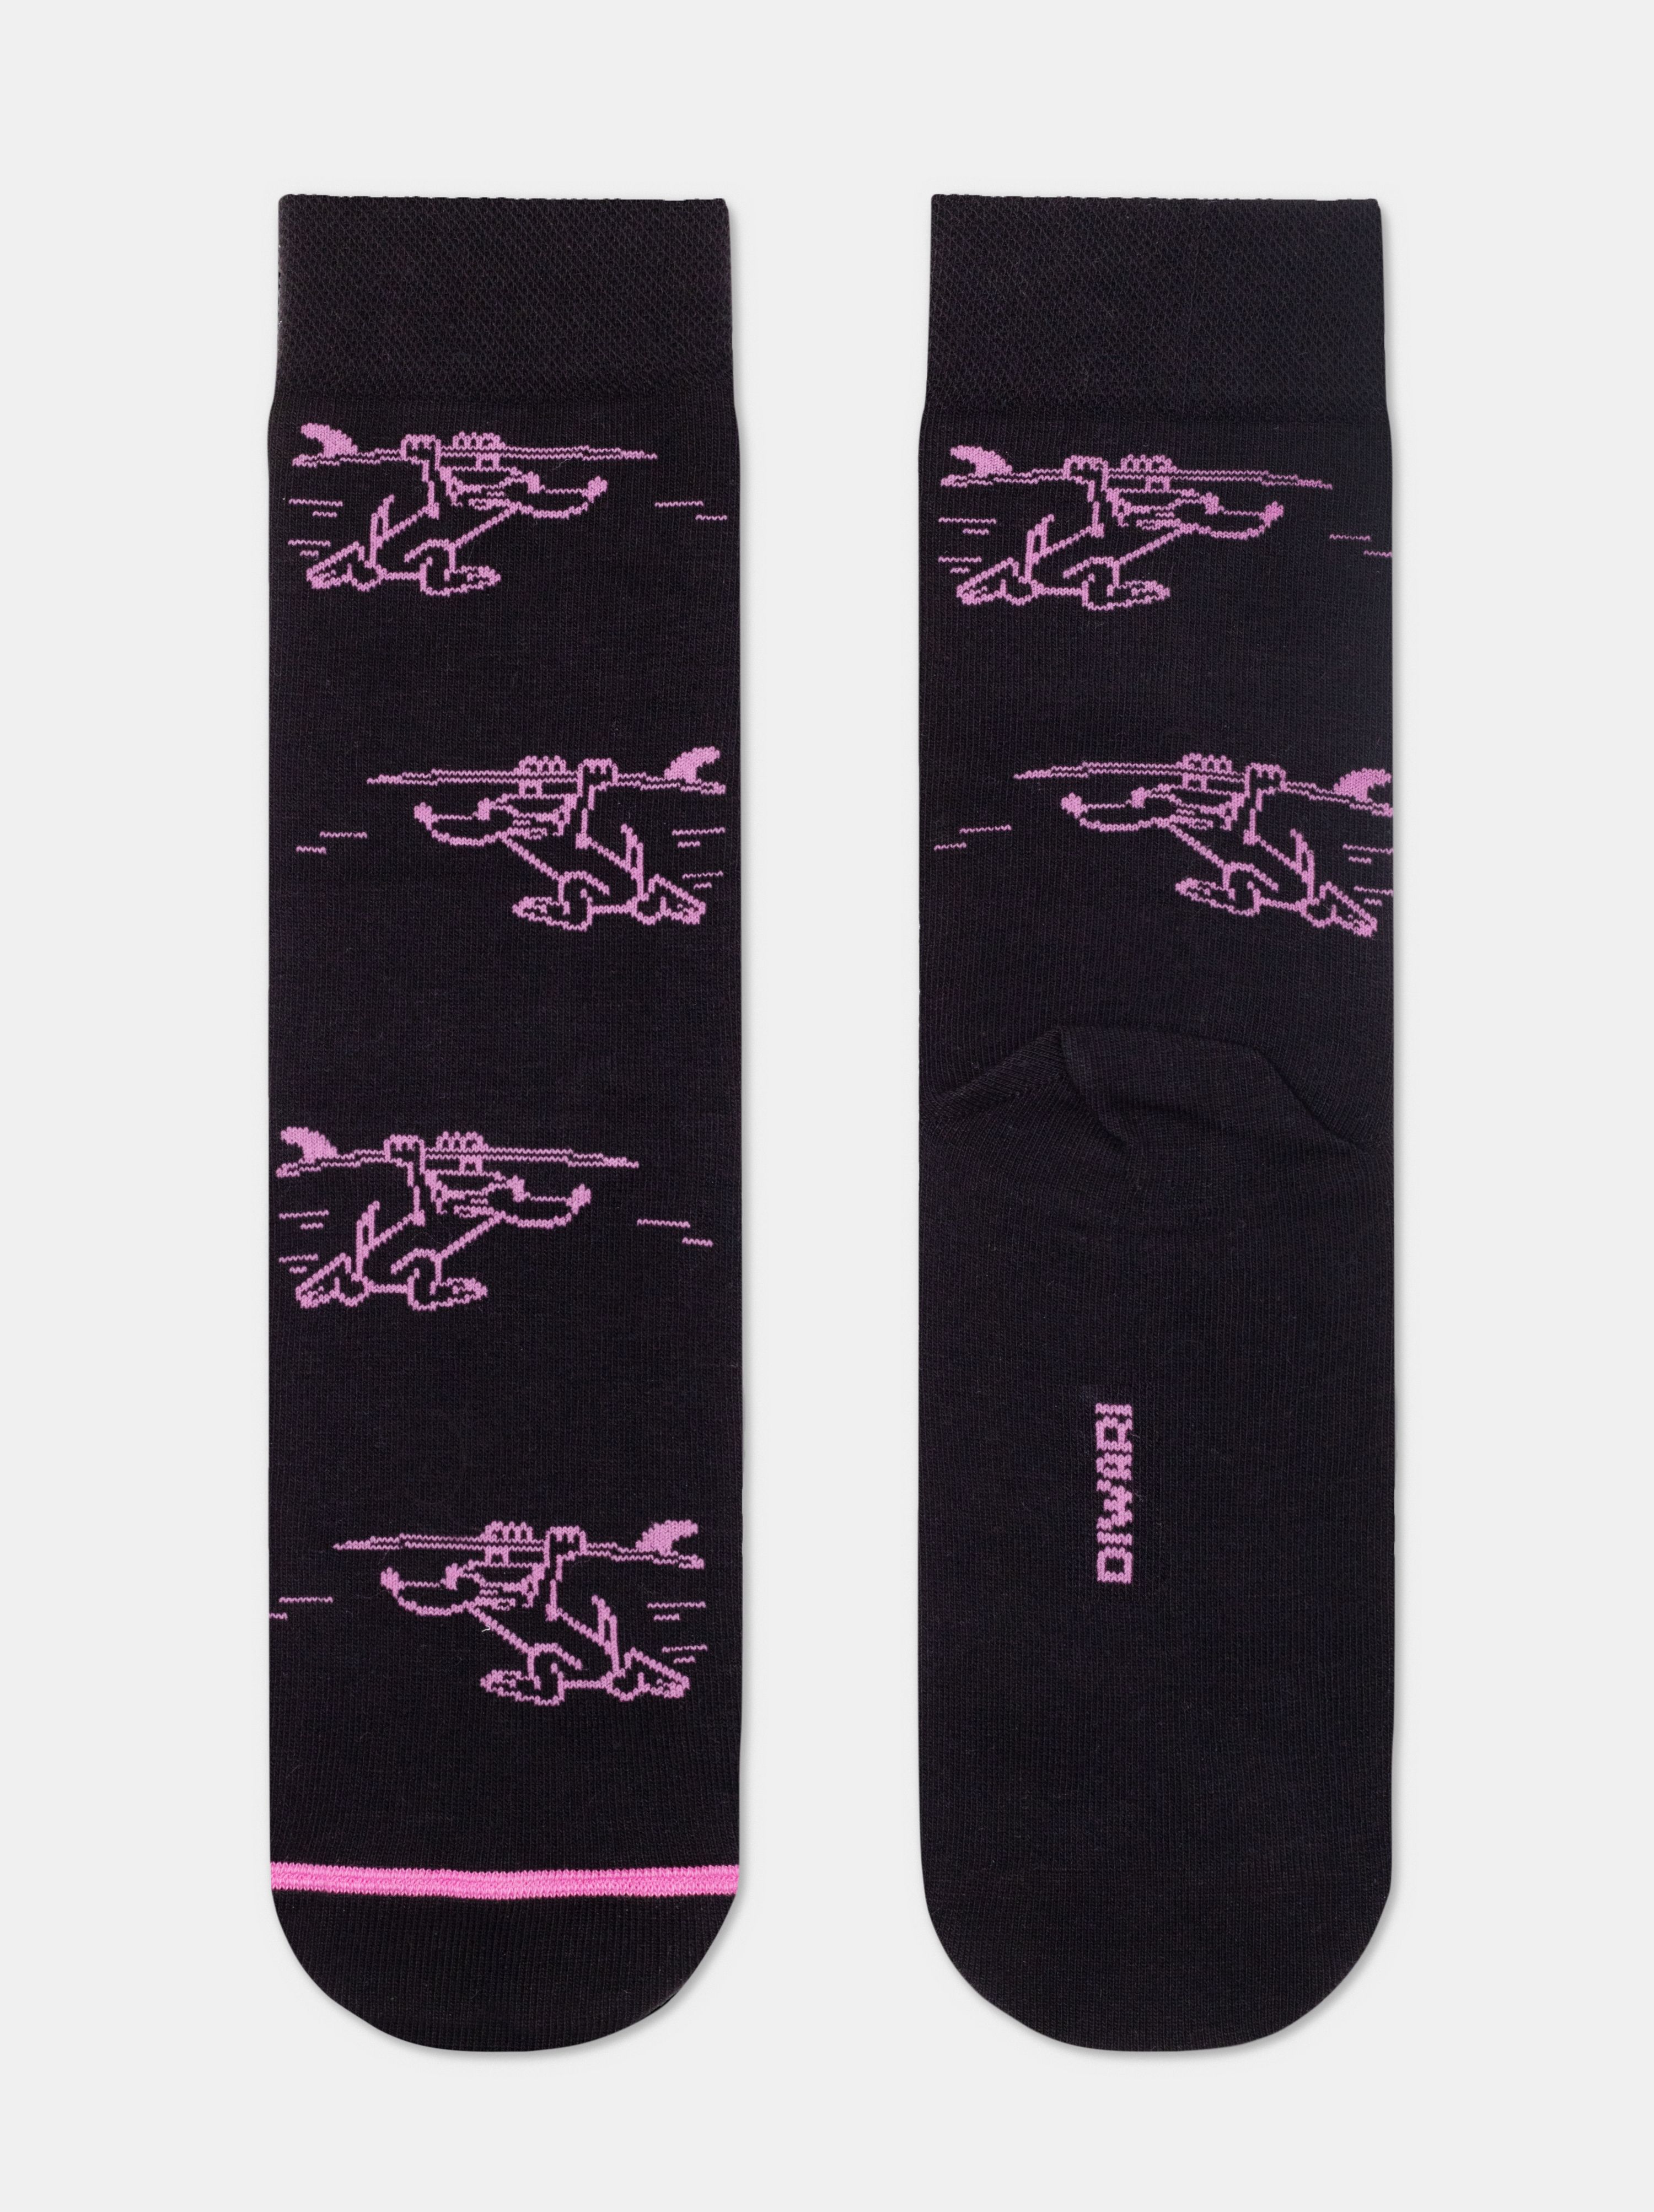 Хлопковые носки с рисунком «Surfer» Conte ⭐️, цвет черный, размер 40-41